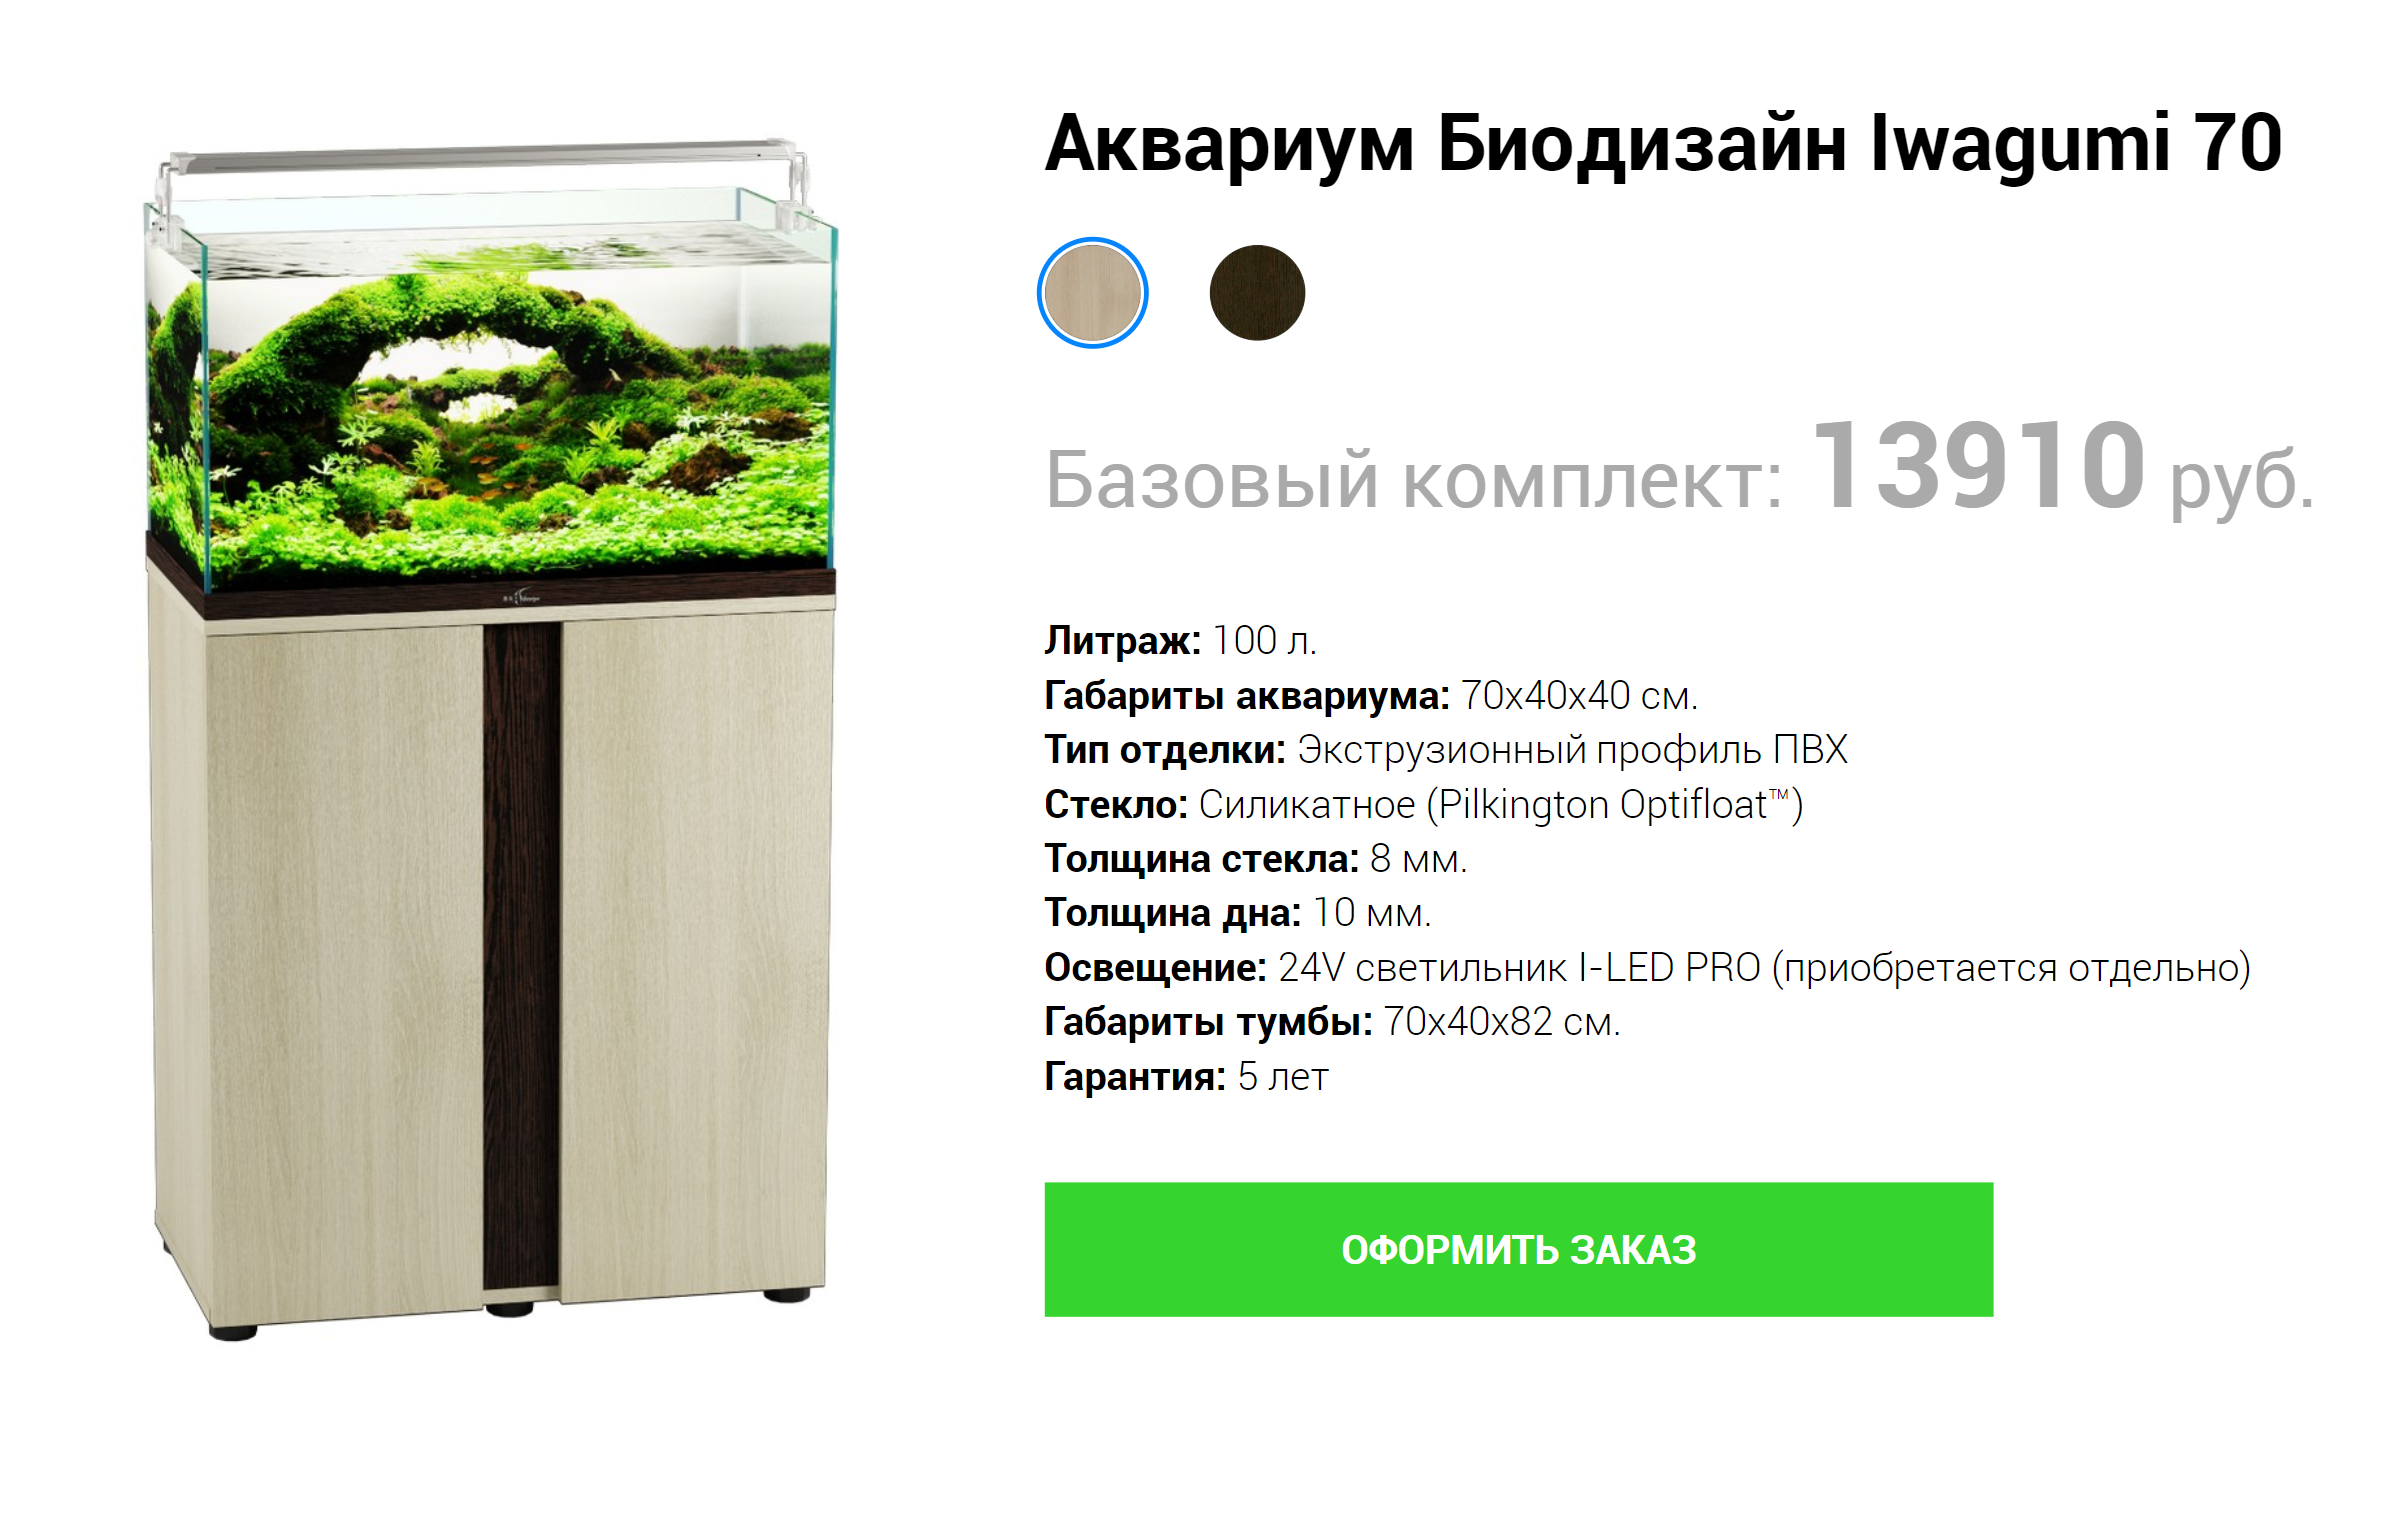 А аквариумы завода «Биодизайн» продаются без оборудования — даже светильник можно выбрать и купить отдельно. Источник: shop.biodes.ru